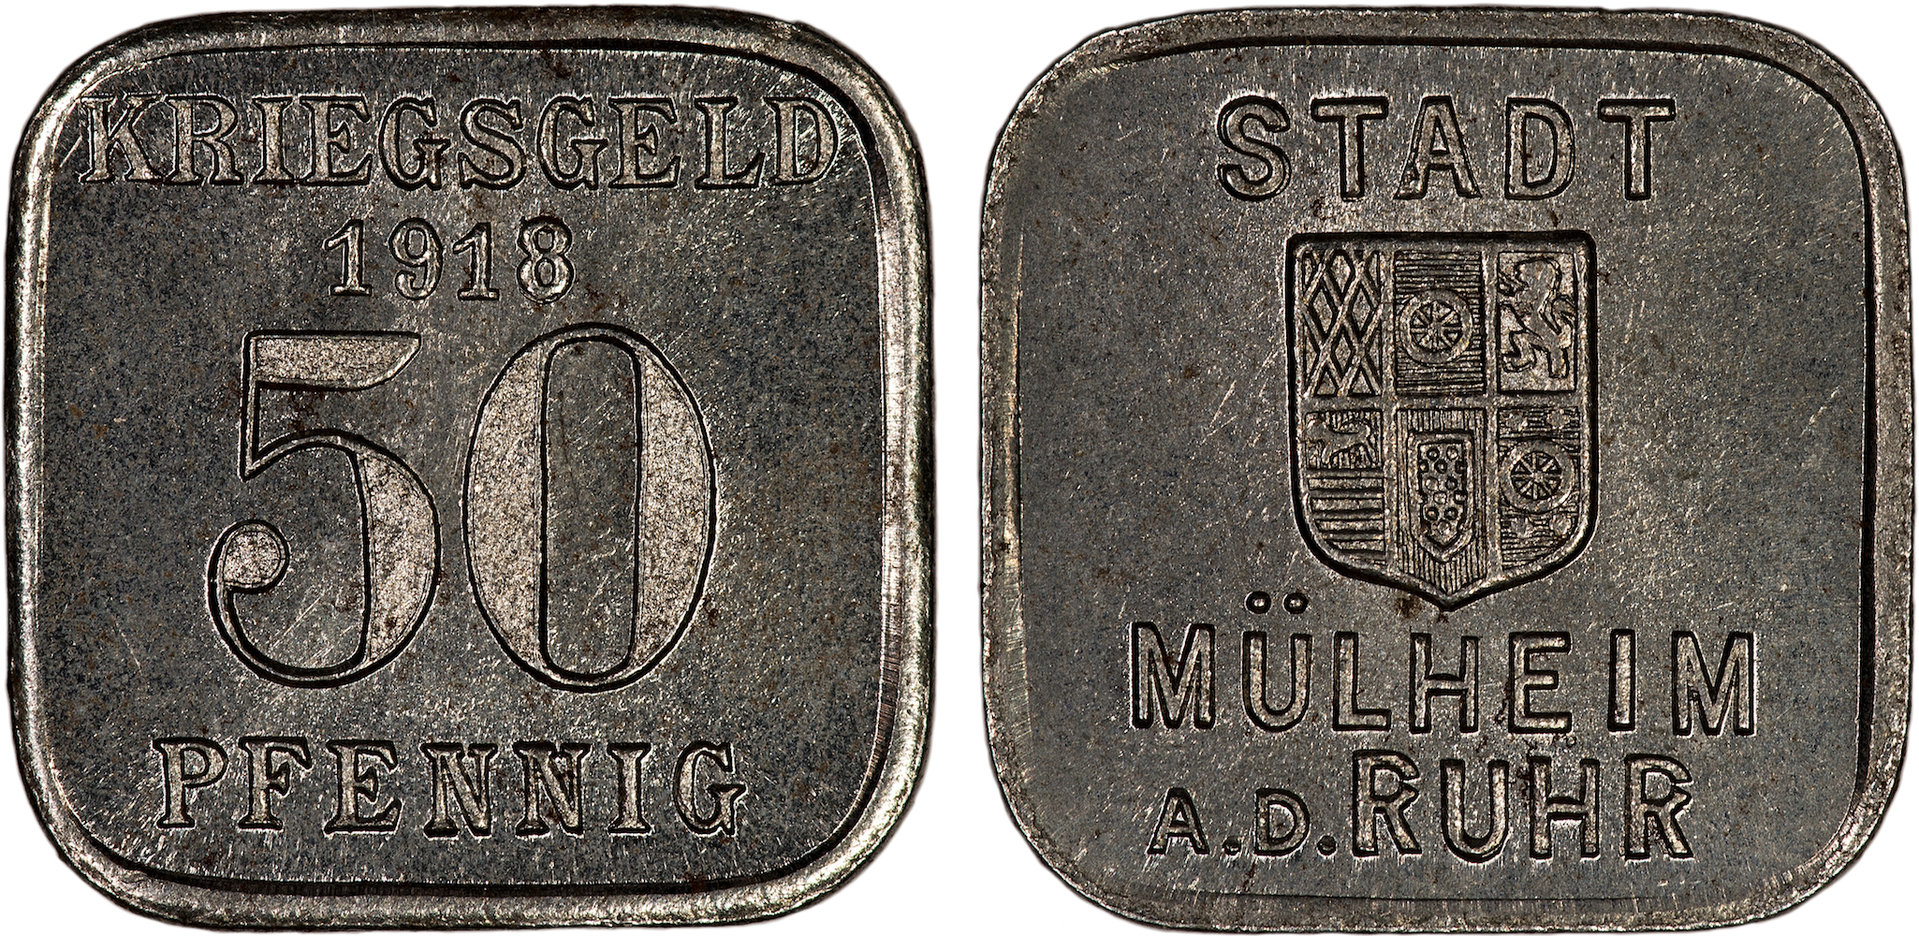 Germany (Rhine Republic - Mulheim a.d. Ruhr) - 1918 Kriegsgeld 50 Pfennig.jpg